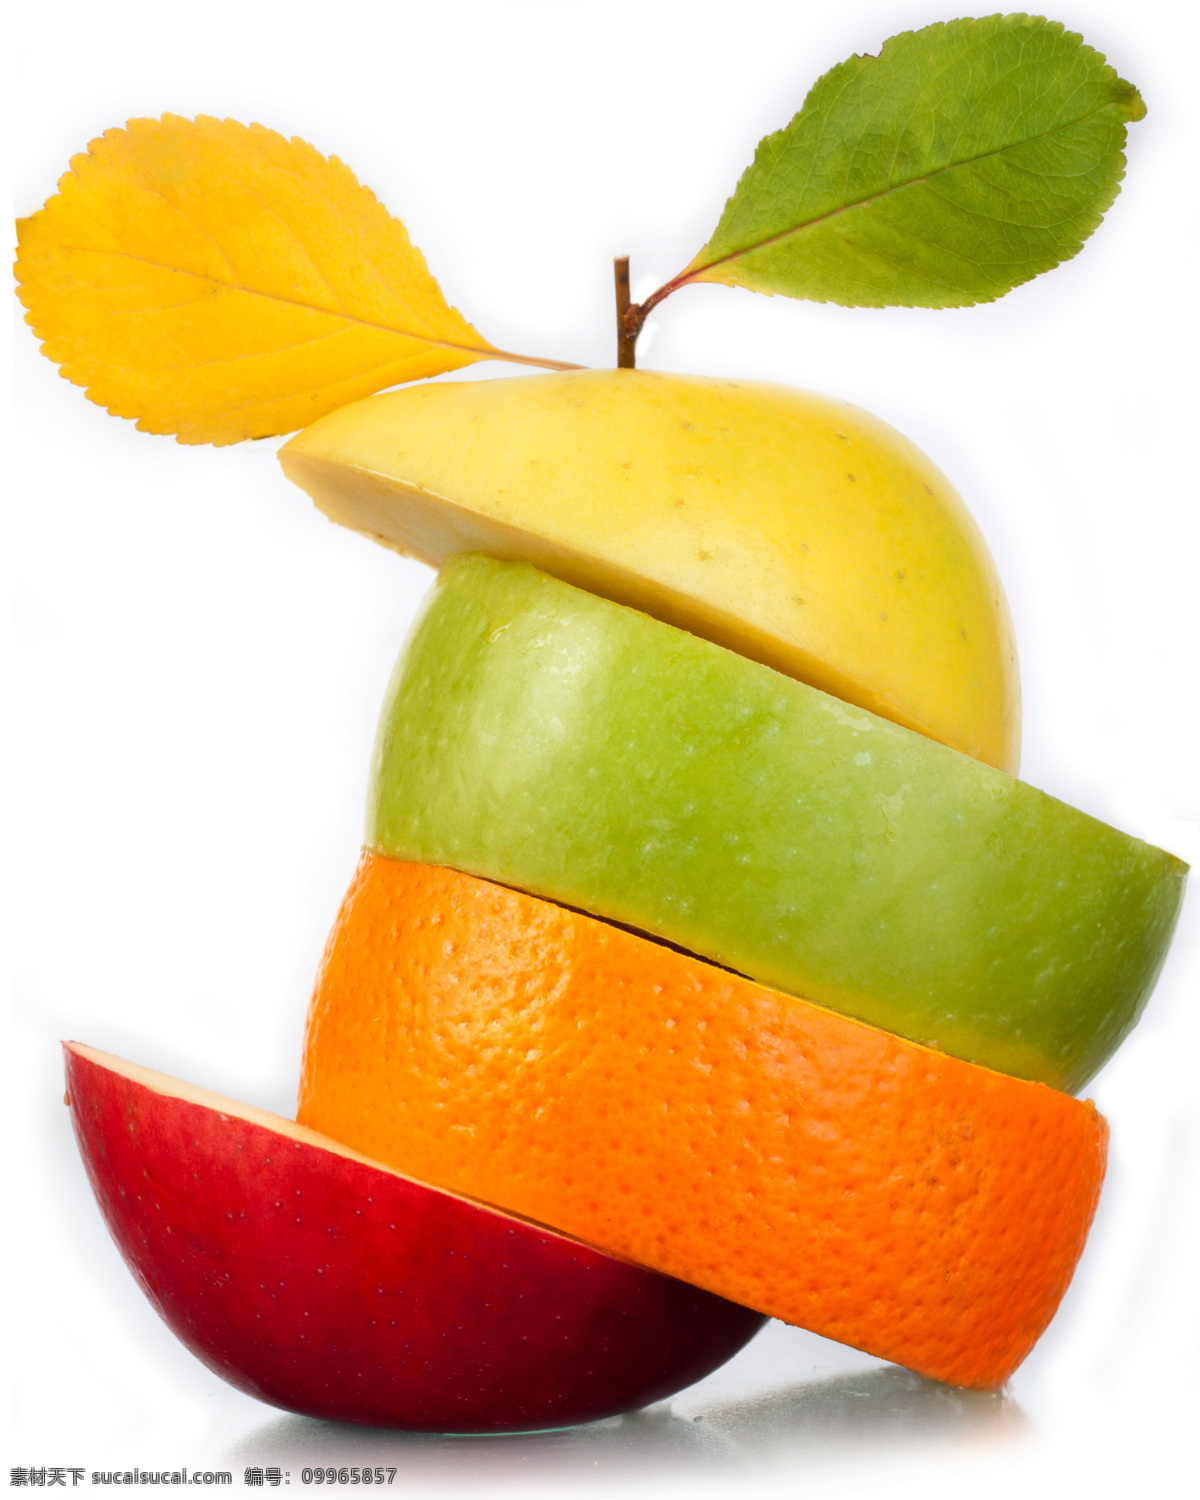 水果 创意 合成 高清 大图 苹果 青苹果 红苹果 创意合成 斜切 橙子 设计素材 高清大图 海报 水果蔬菜 餐饮美食 白色